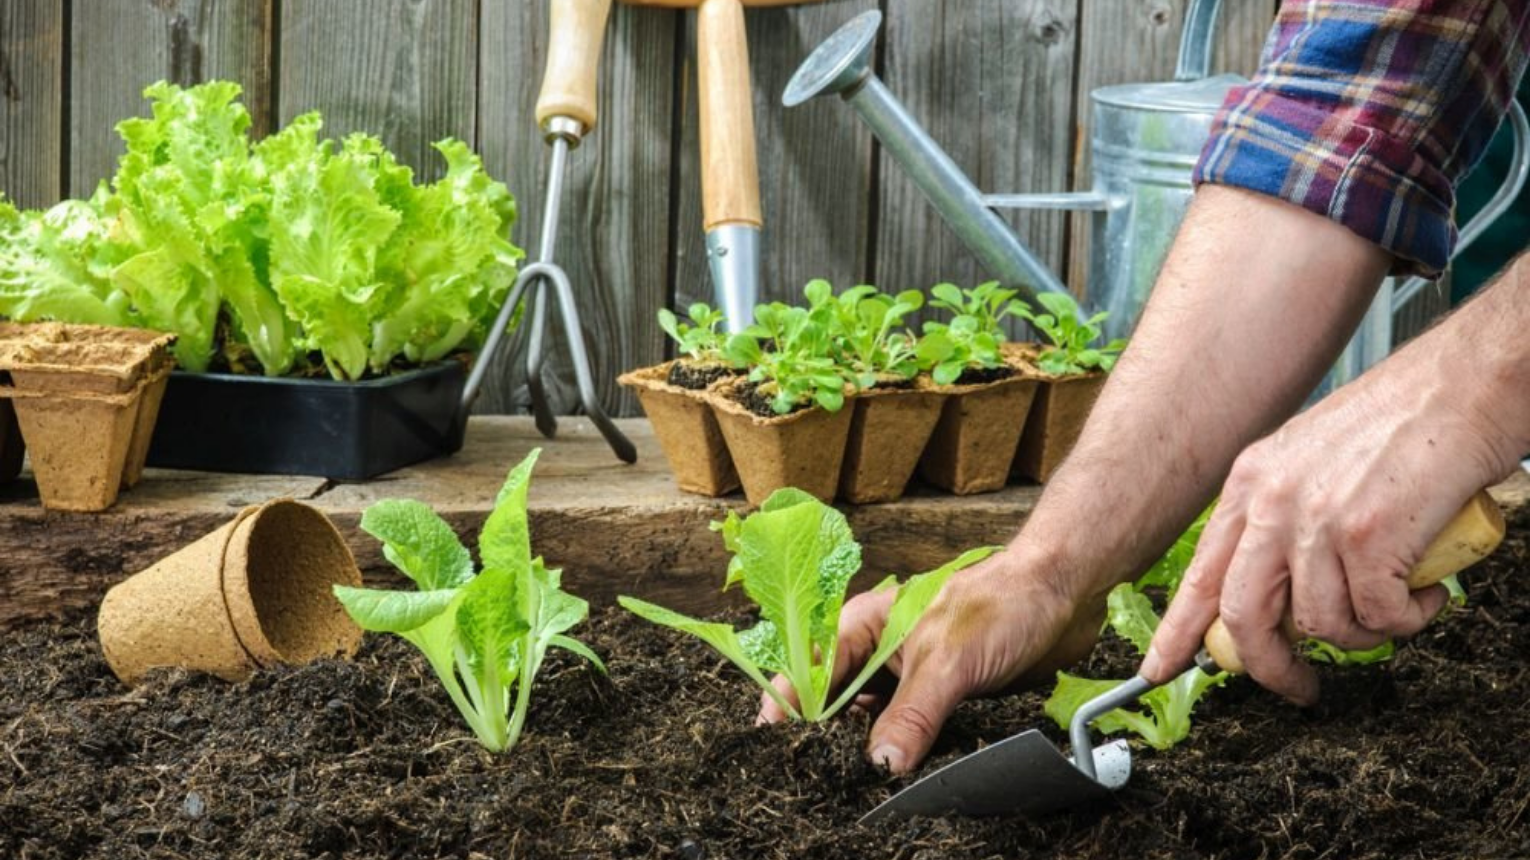 Hobbi kertész tanfolyam/Gyógynövények kurzus